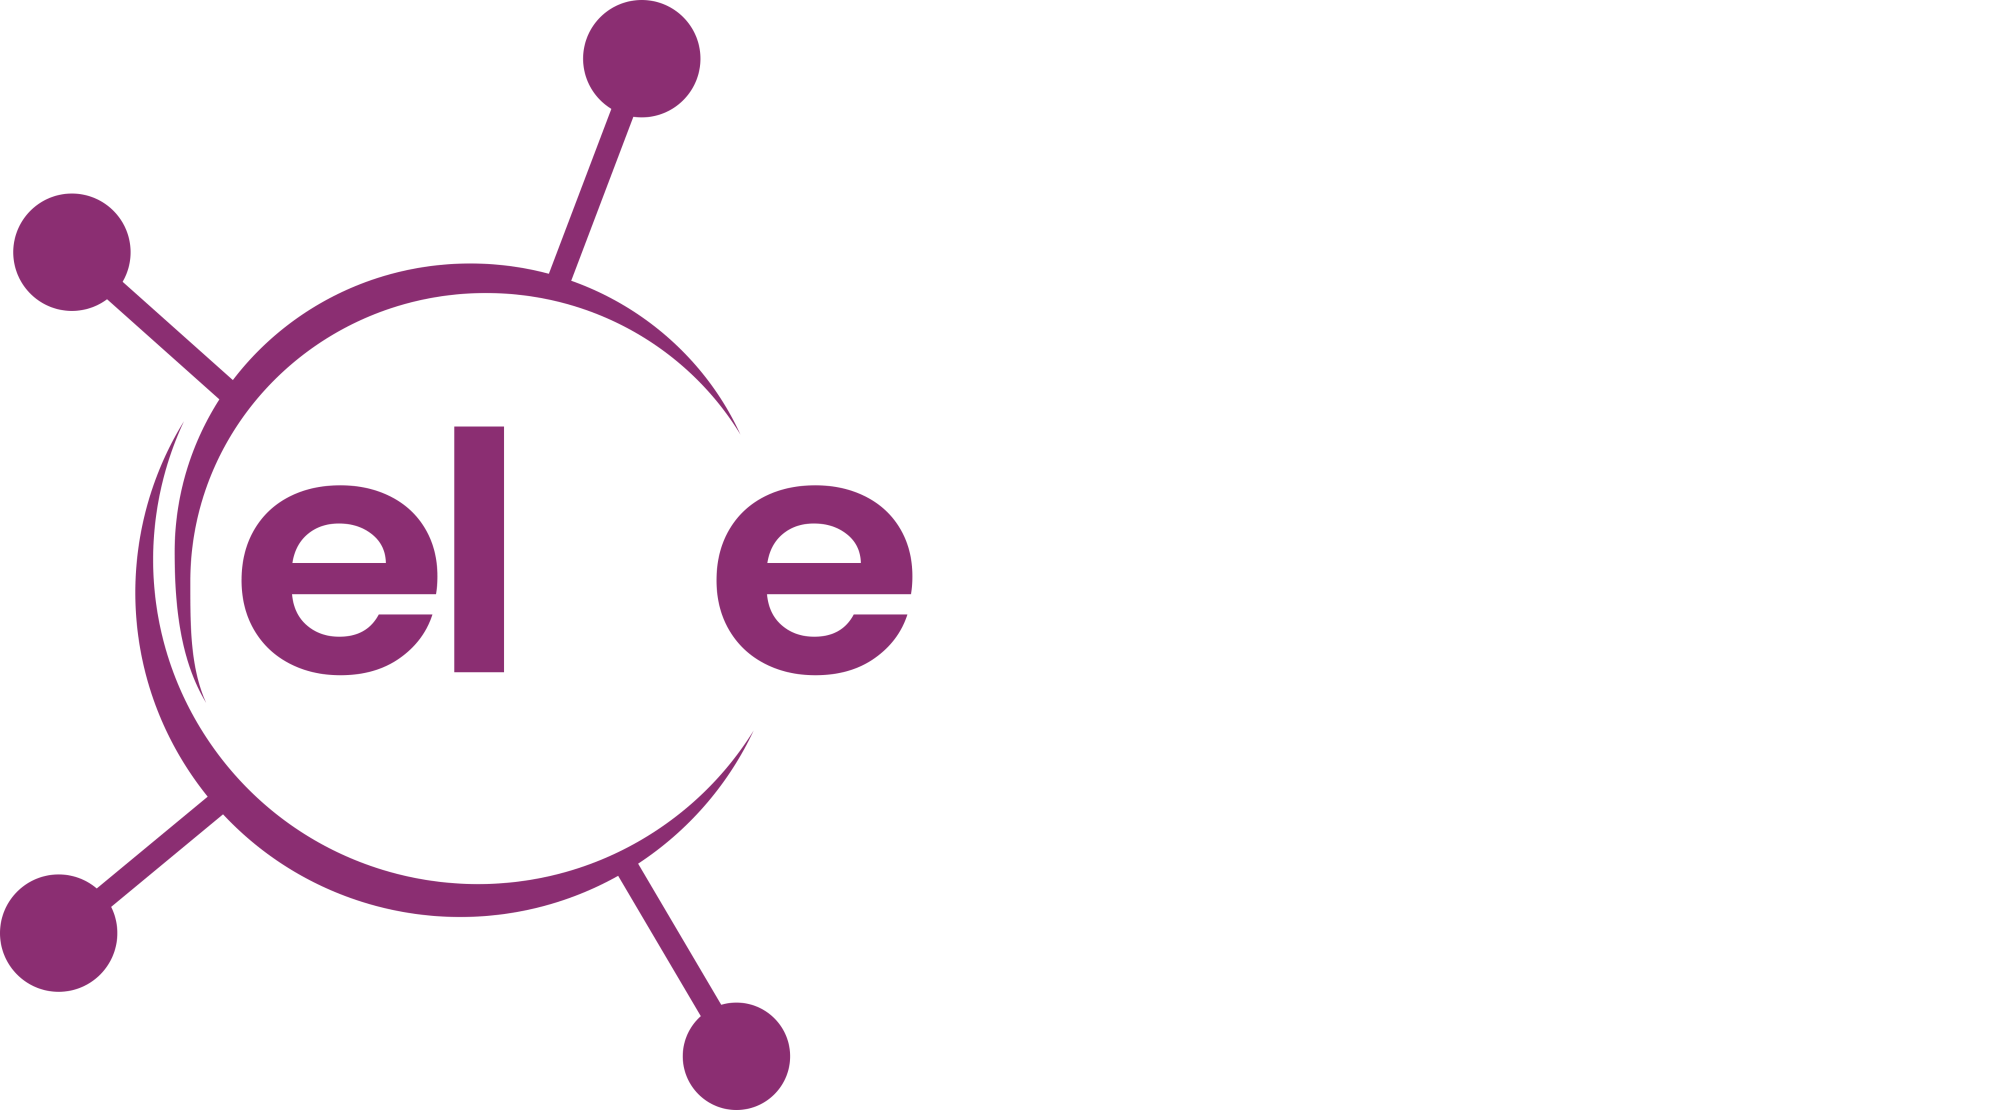 Elite Energy Consultants Logo